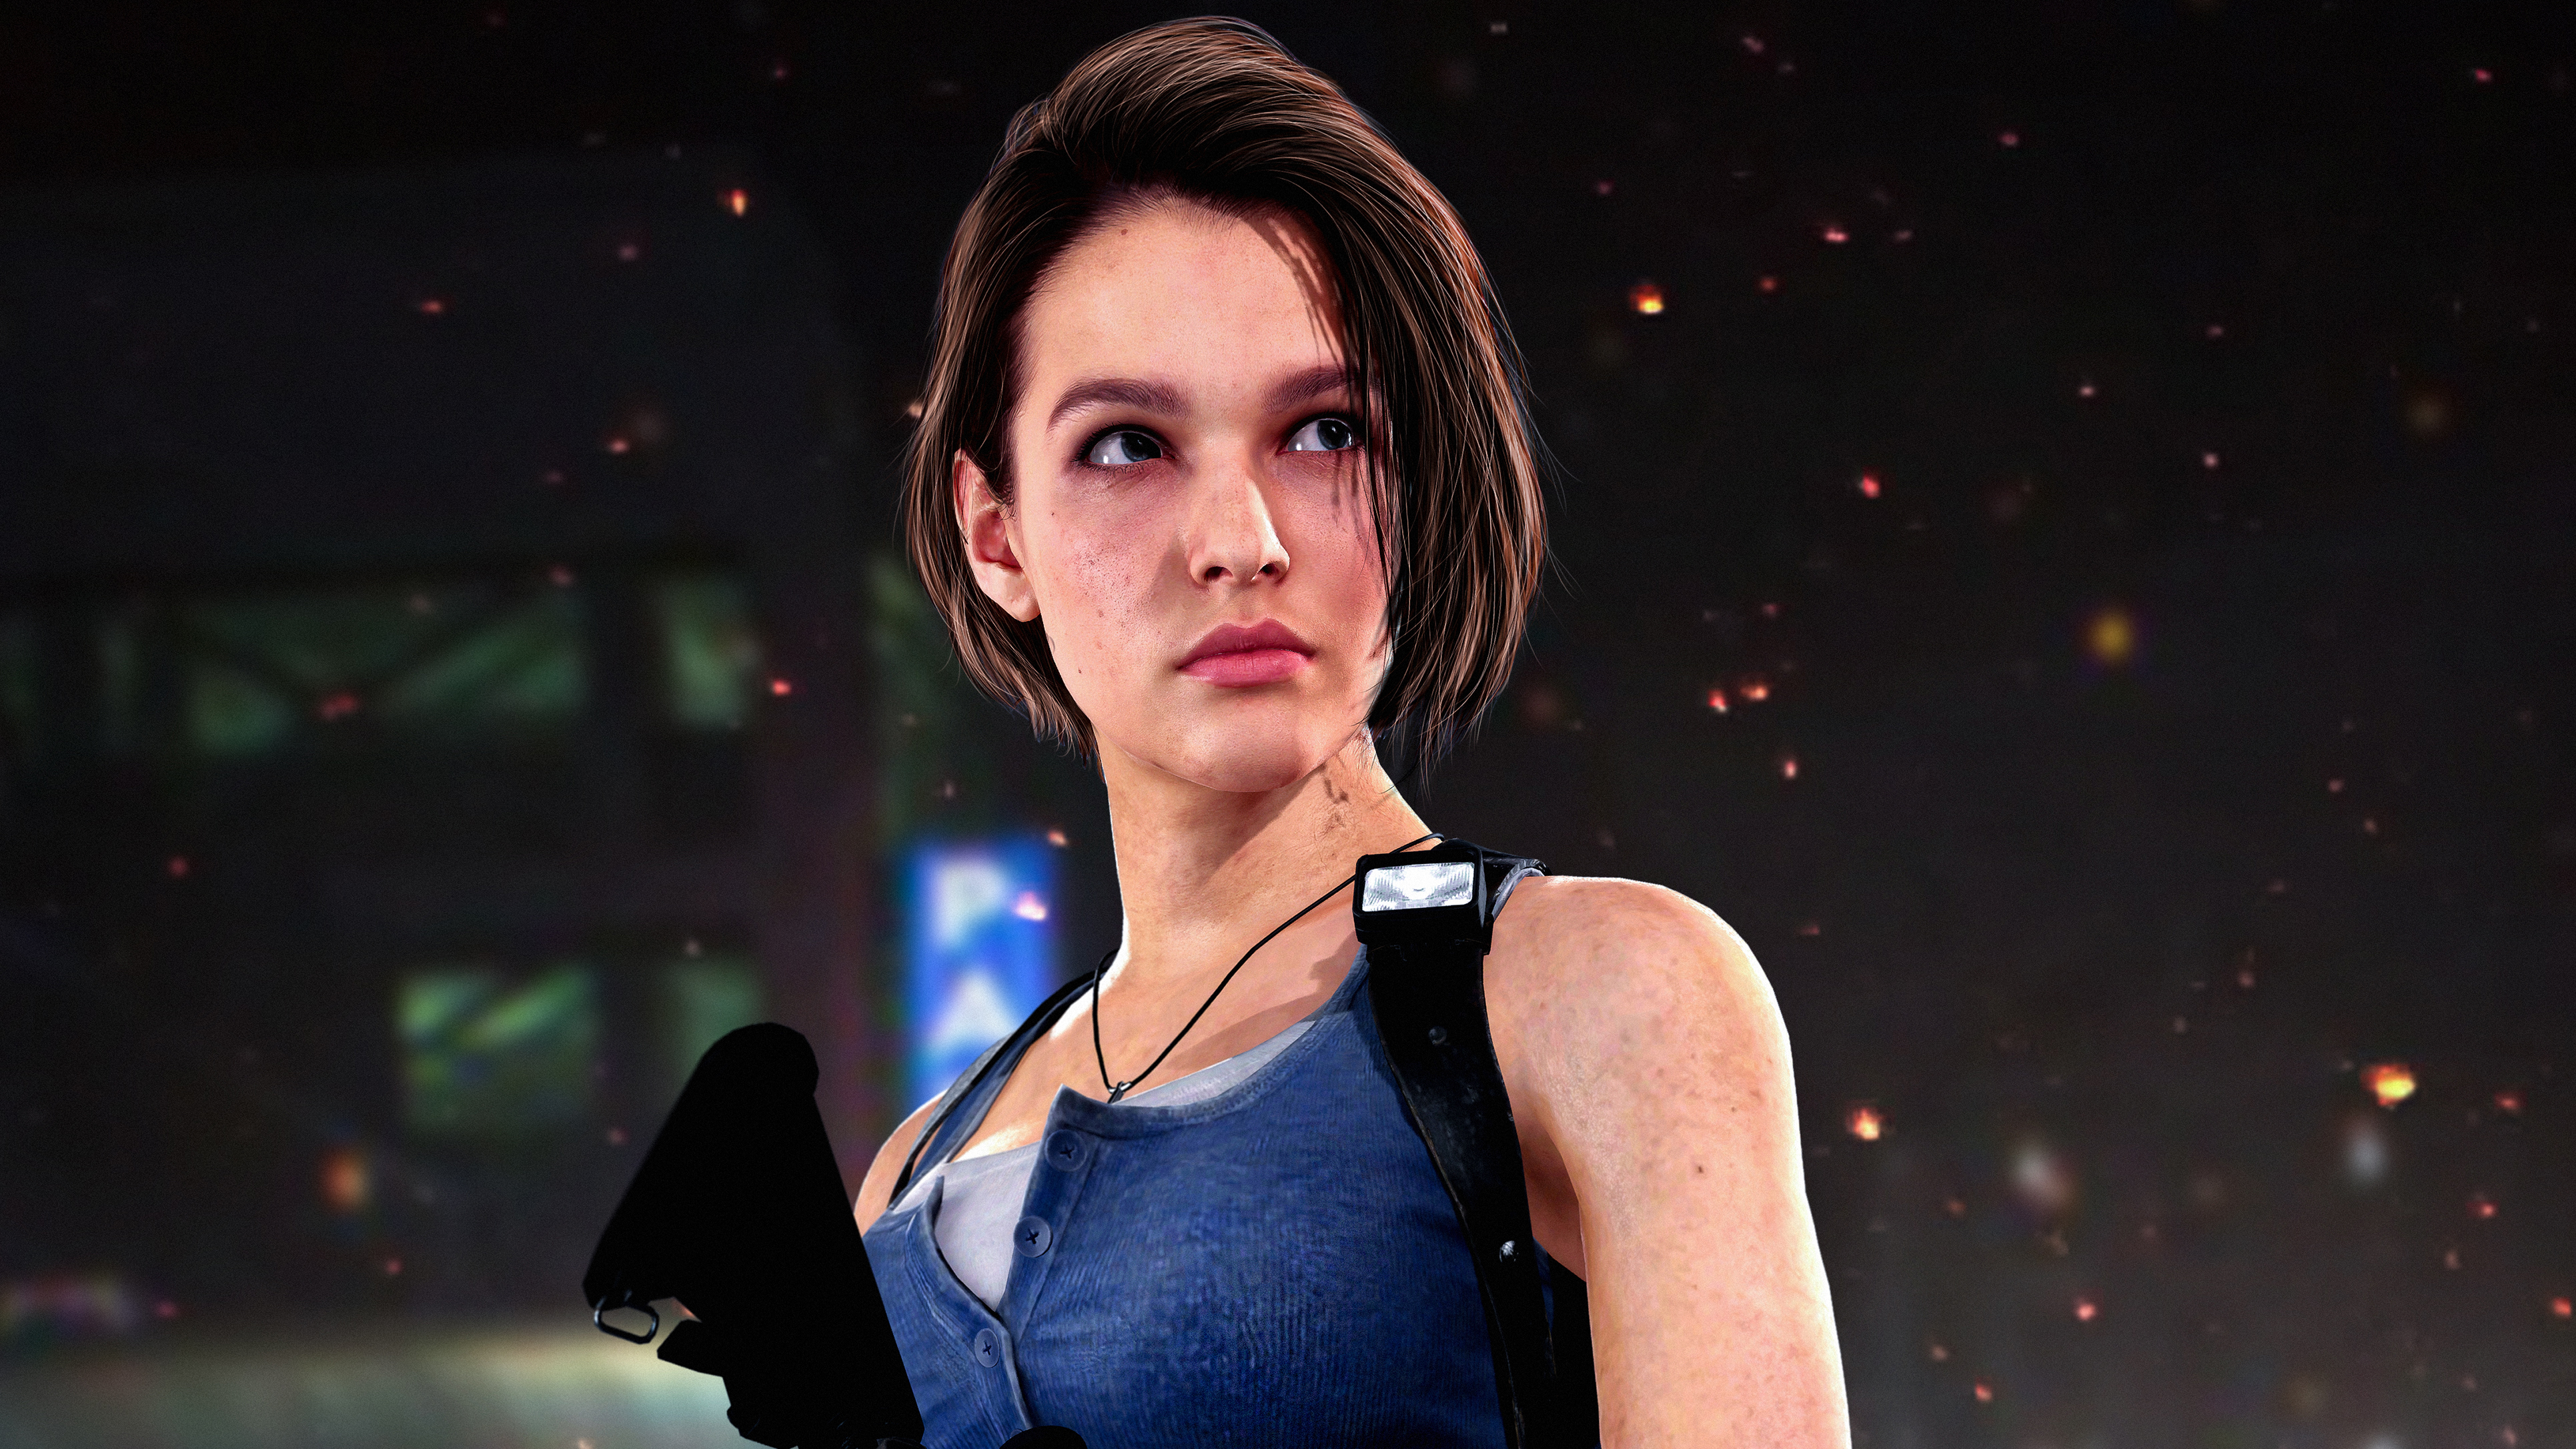 Jill Valentine Resident Evil 3 Remake 4K Wallpaper #7.599